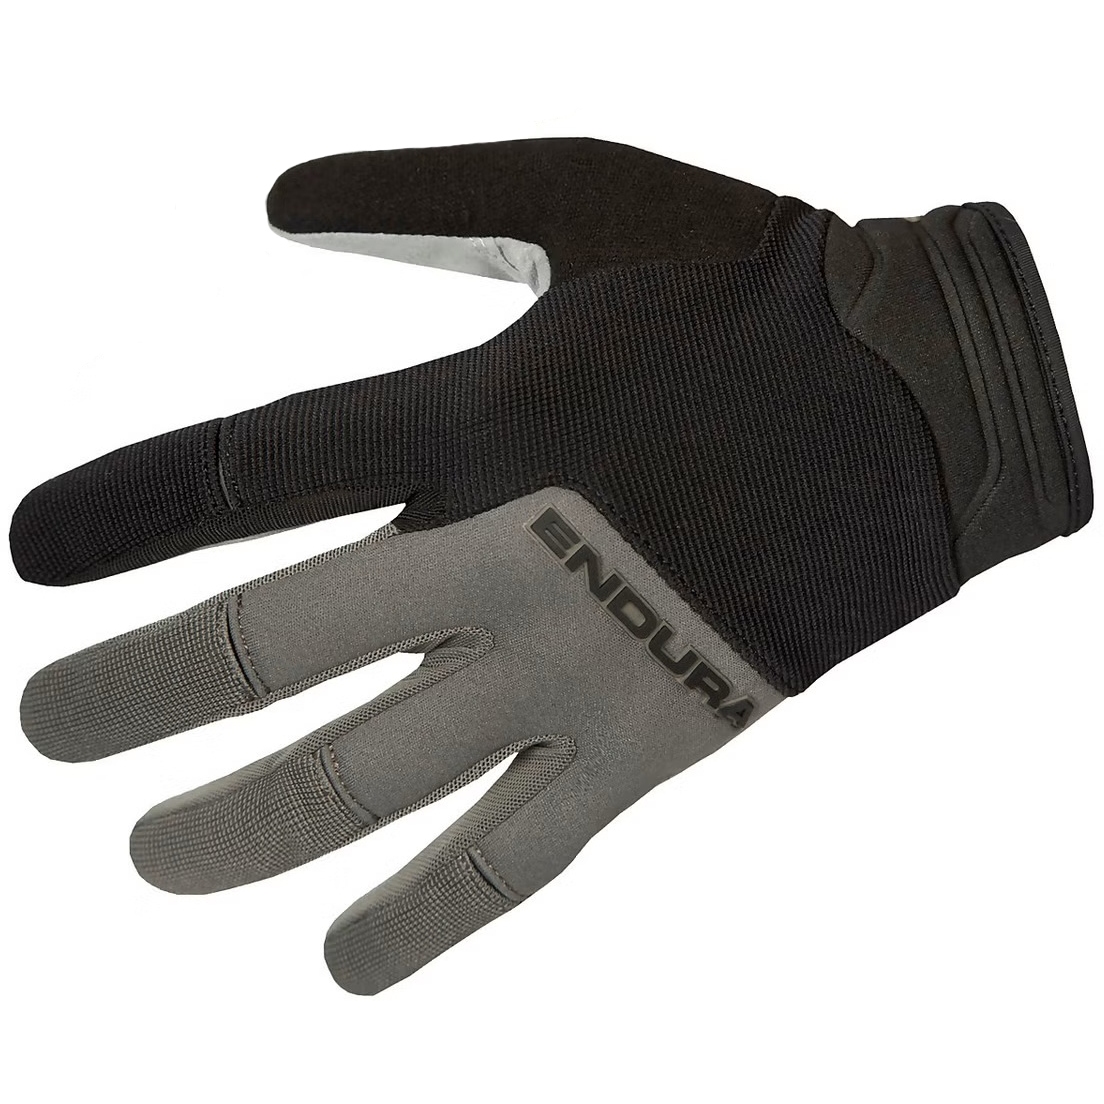 Productfoto van Endura Hummvee Plus II Handschoenen - black